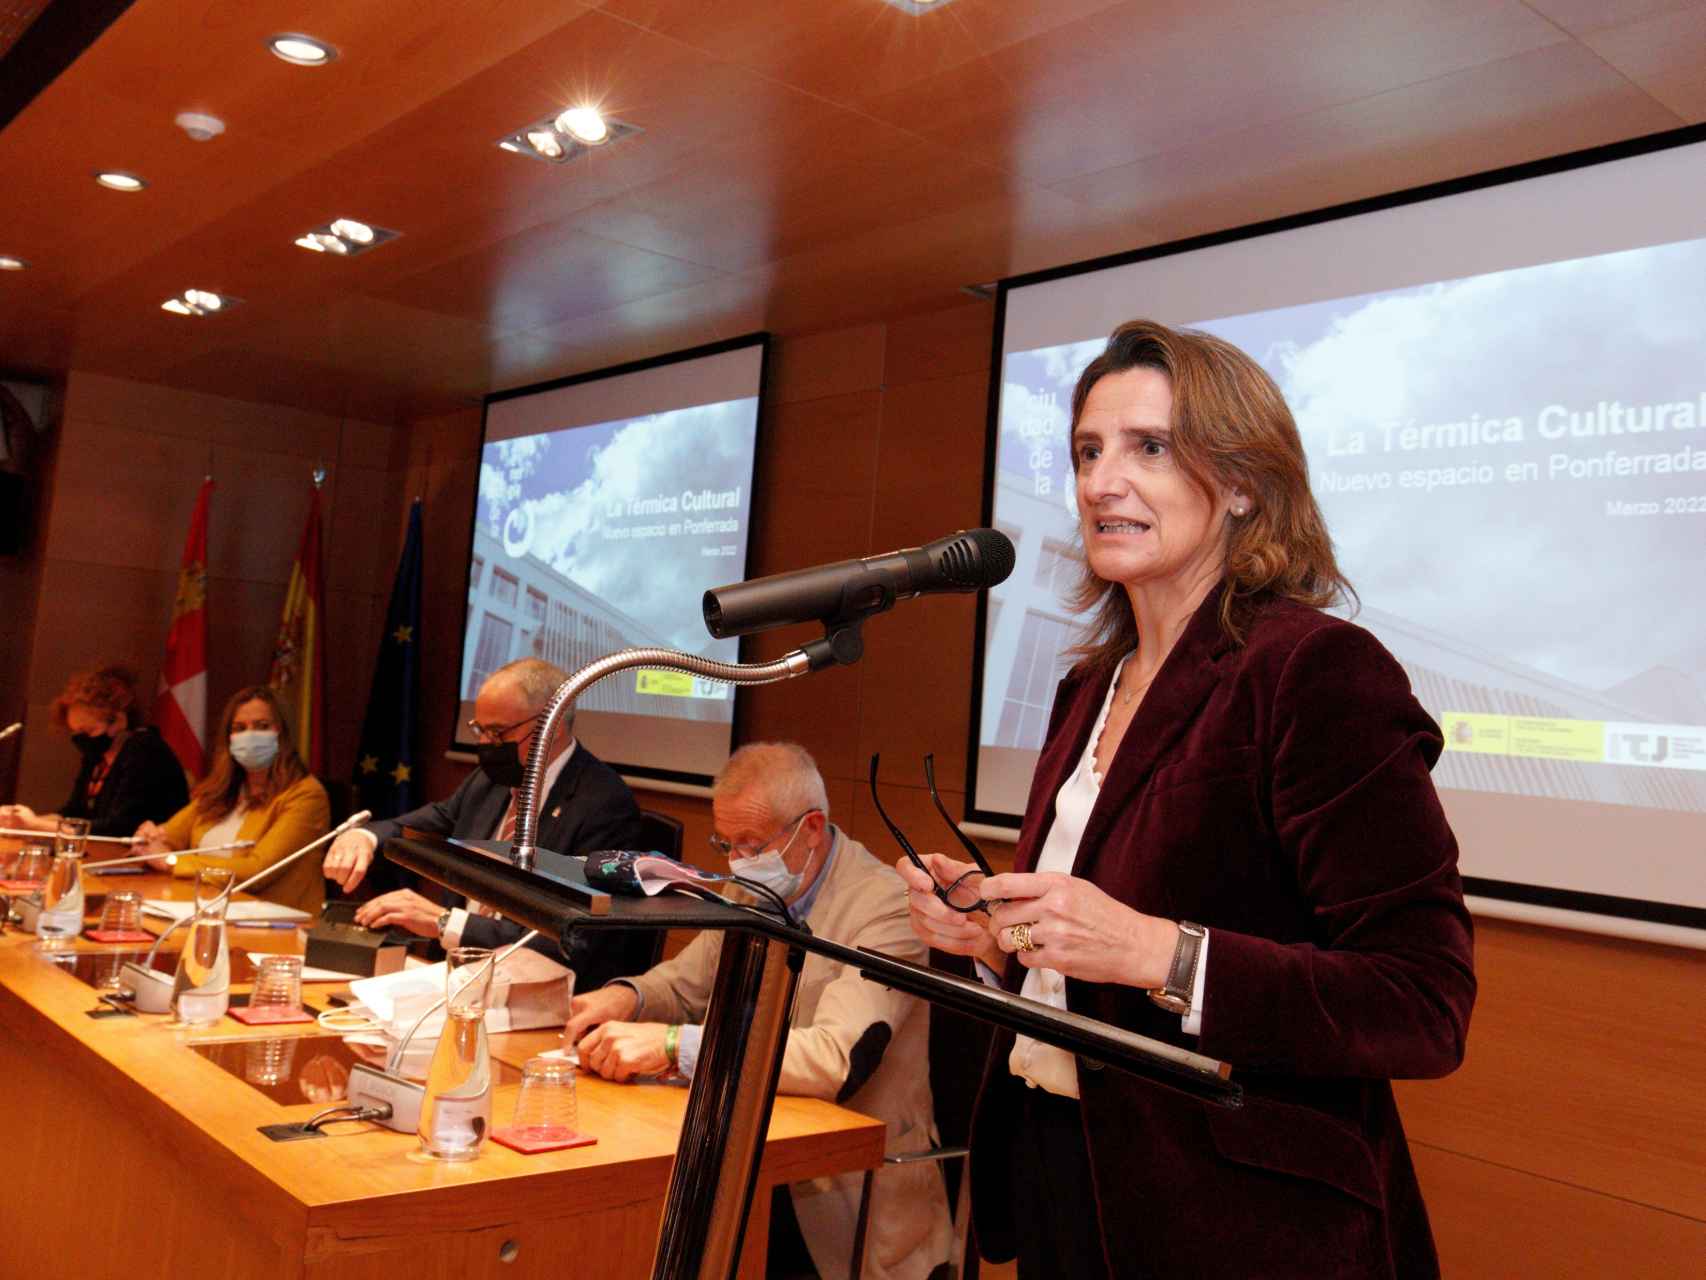 La ministra de Transición Ecológica, Teresa Ribera, durante una rueda de prensa en Ponferrada. / ICAL